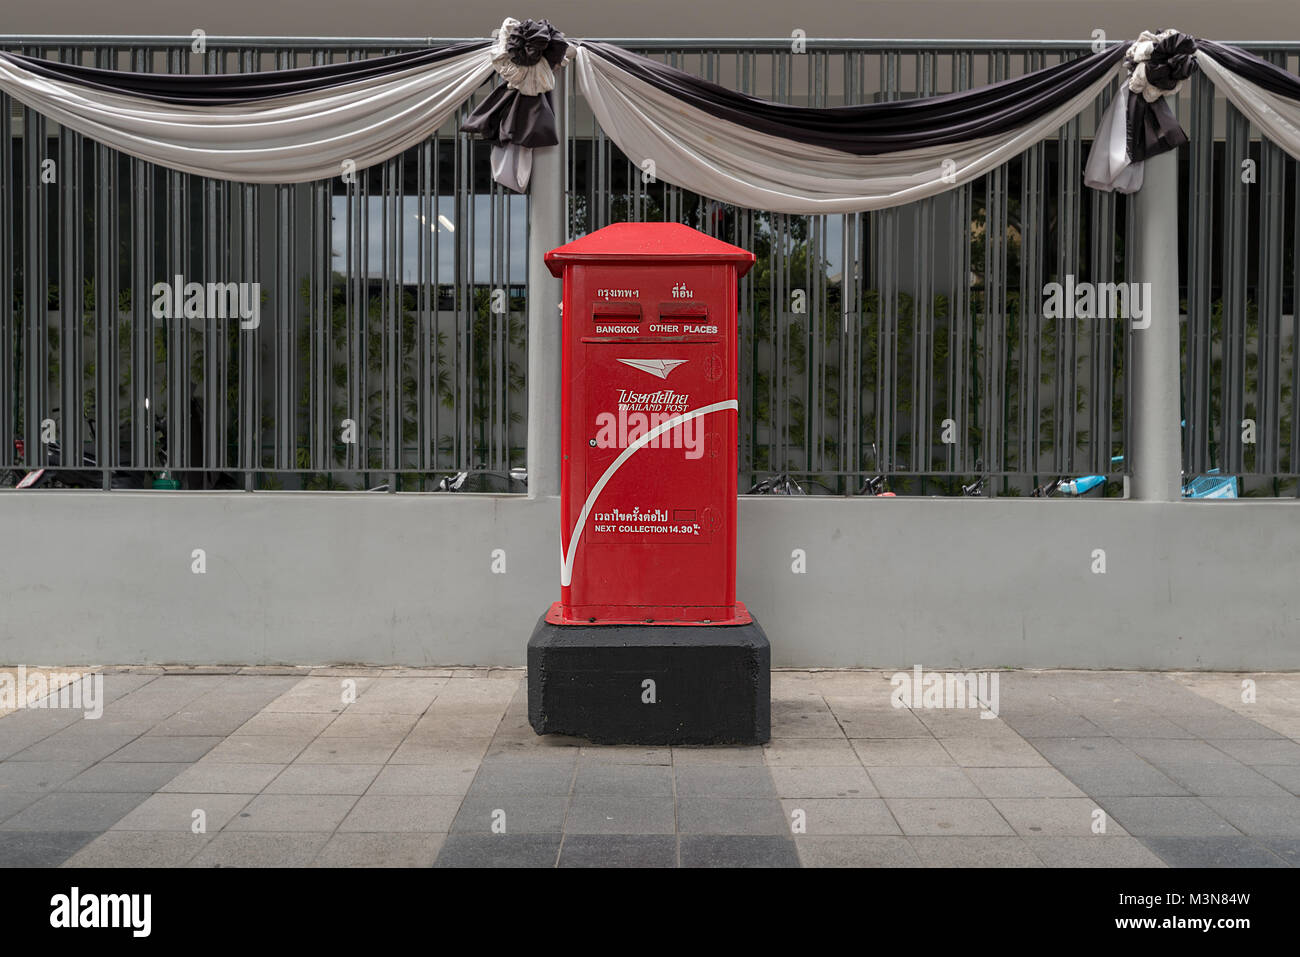 Stadt street view eines Bangkok Thailand Post red Post Box mit 2 Steckplätzen. Stockfoto